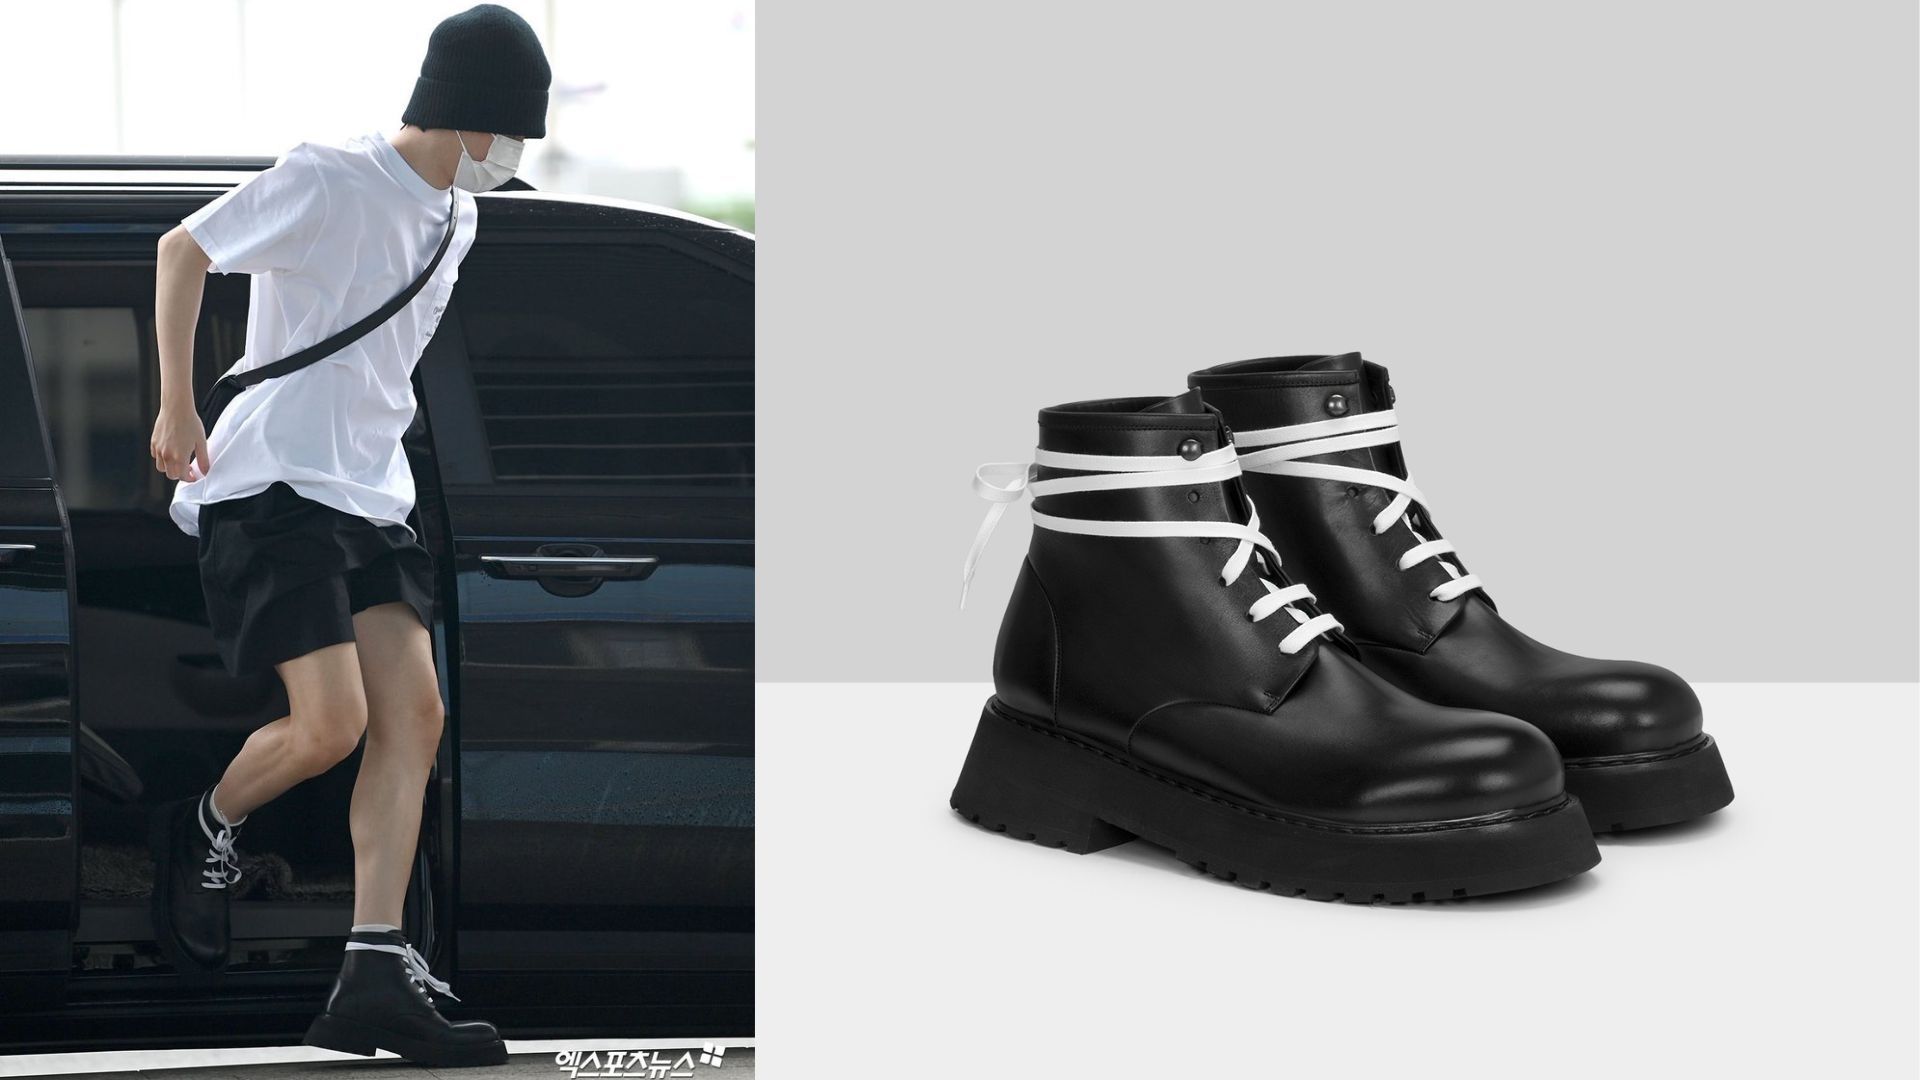 BTS Jimin expensive shoes